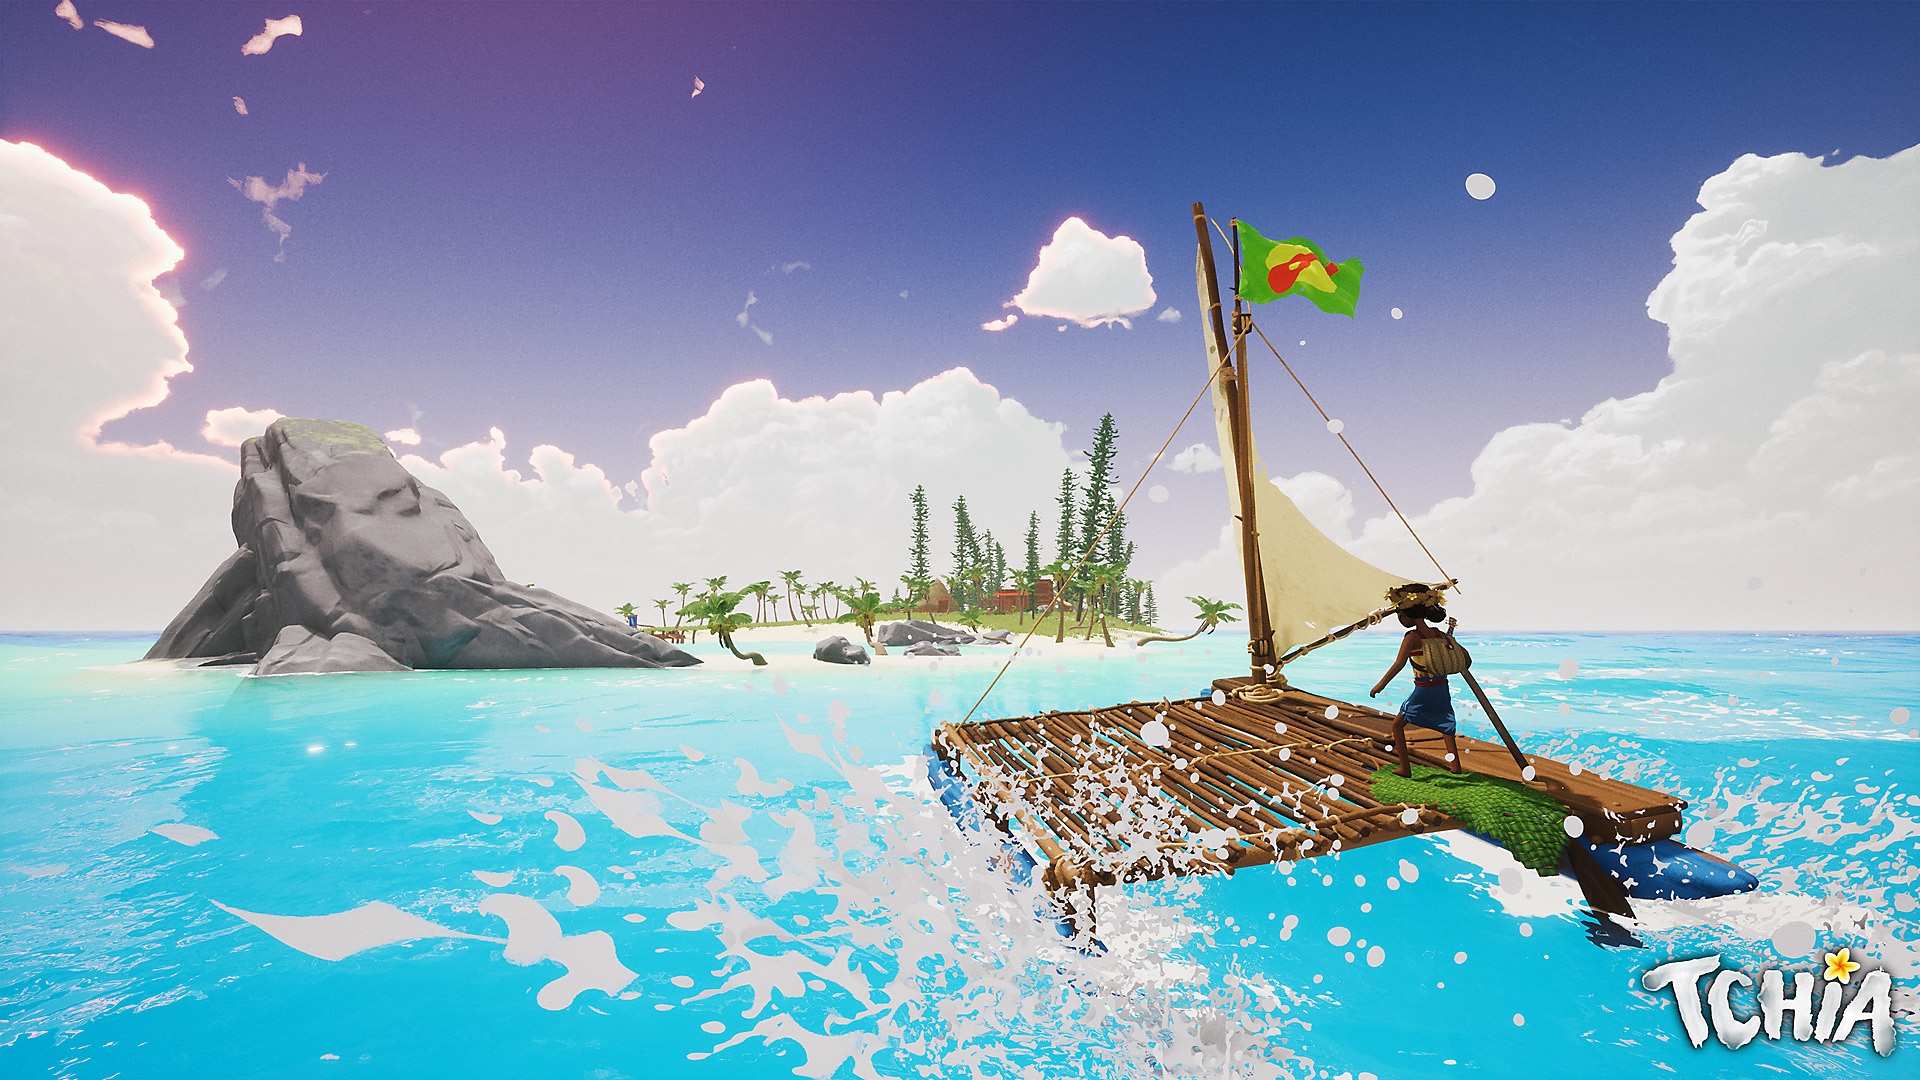 Tchia-skærmbillede med hovedpersonen, der sejler på en tømmerflåde hen mod en ø